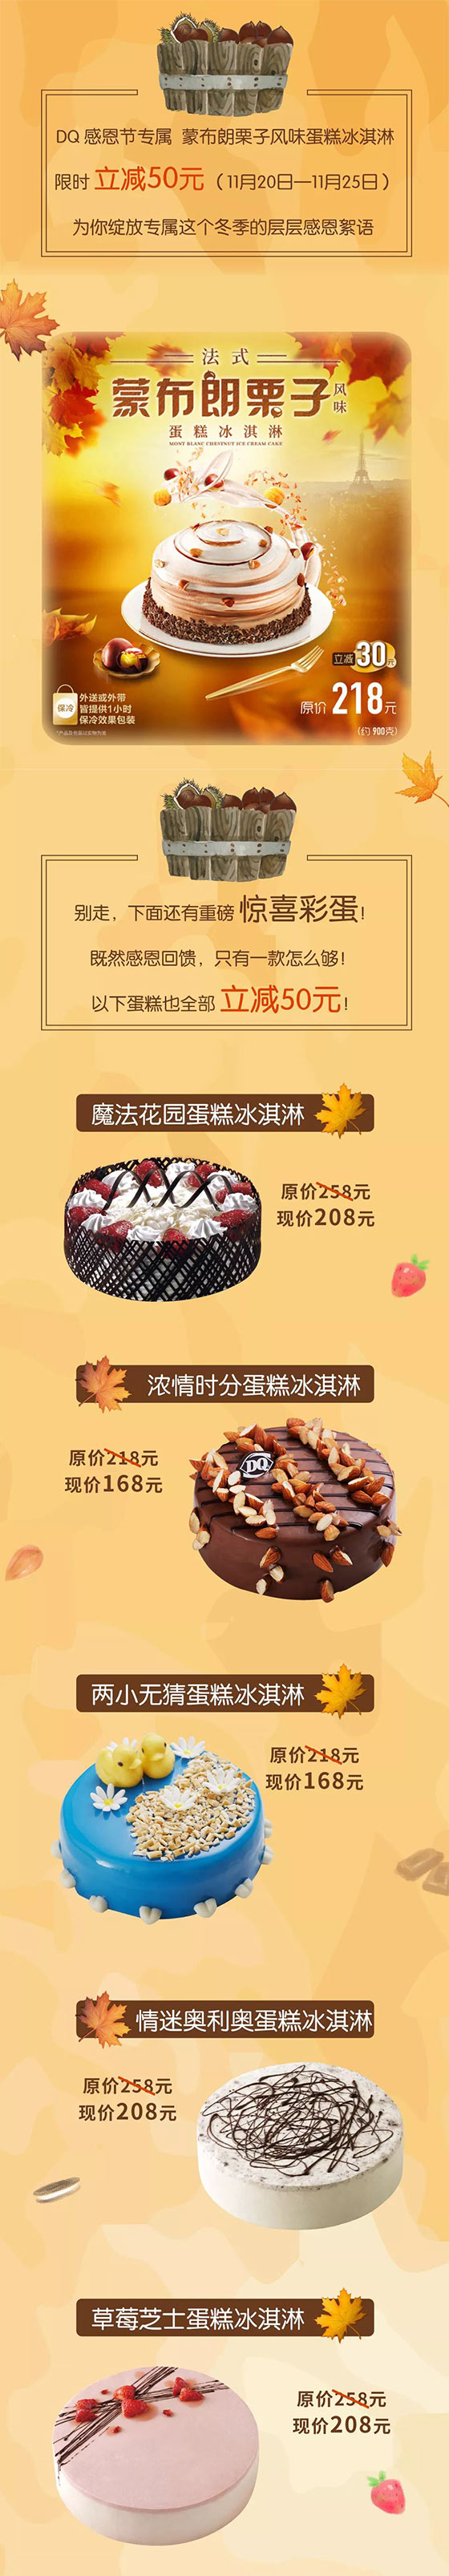 DQ冰雪皇后感恩节专属蛋糕限时立减50元